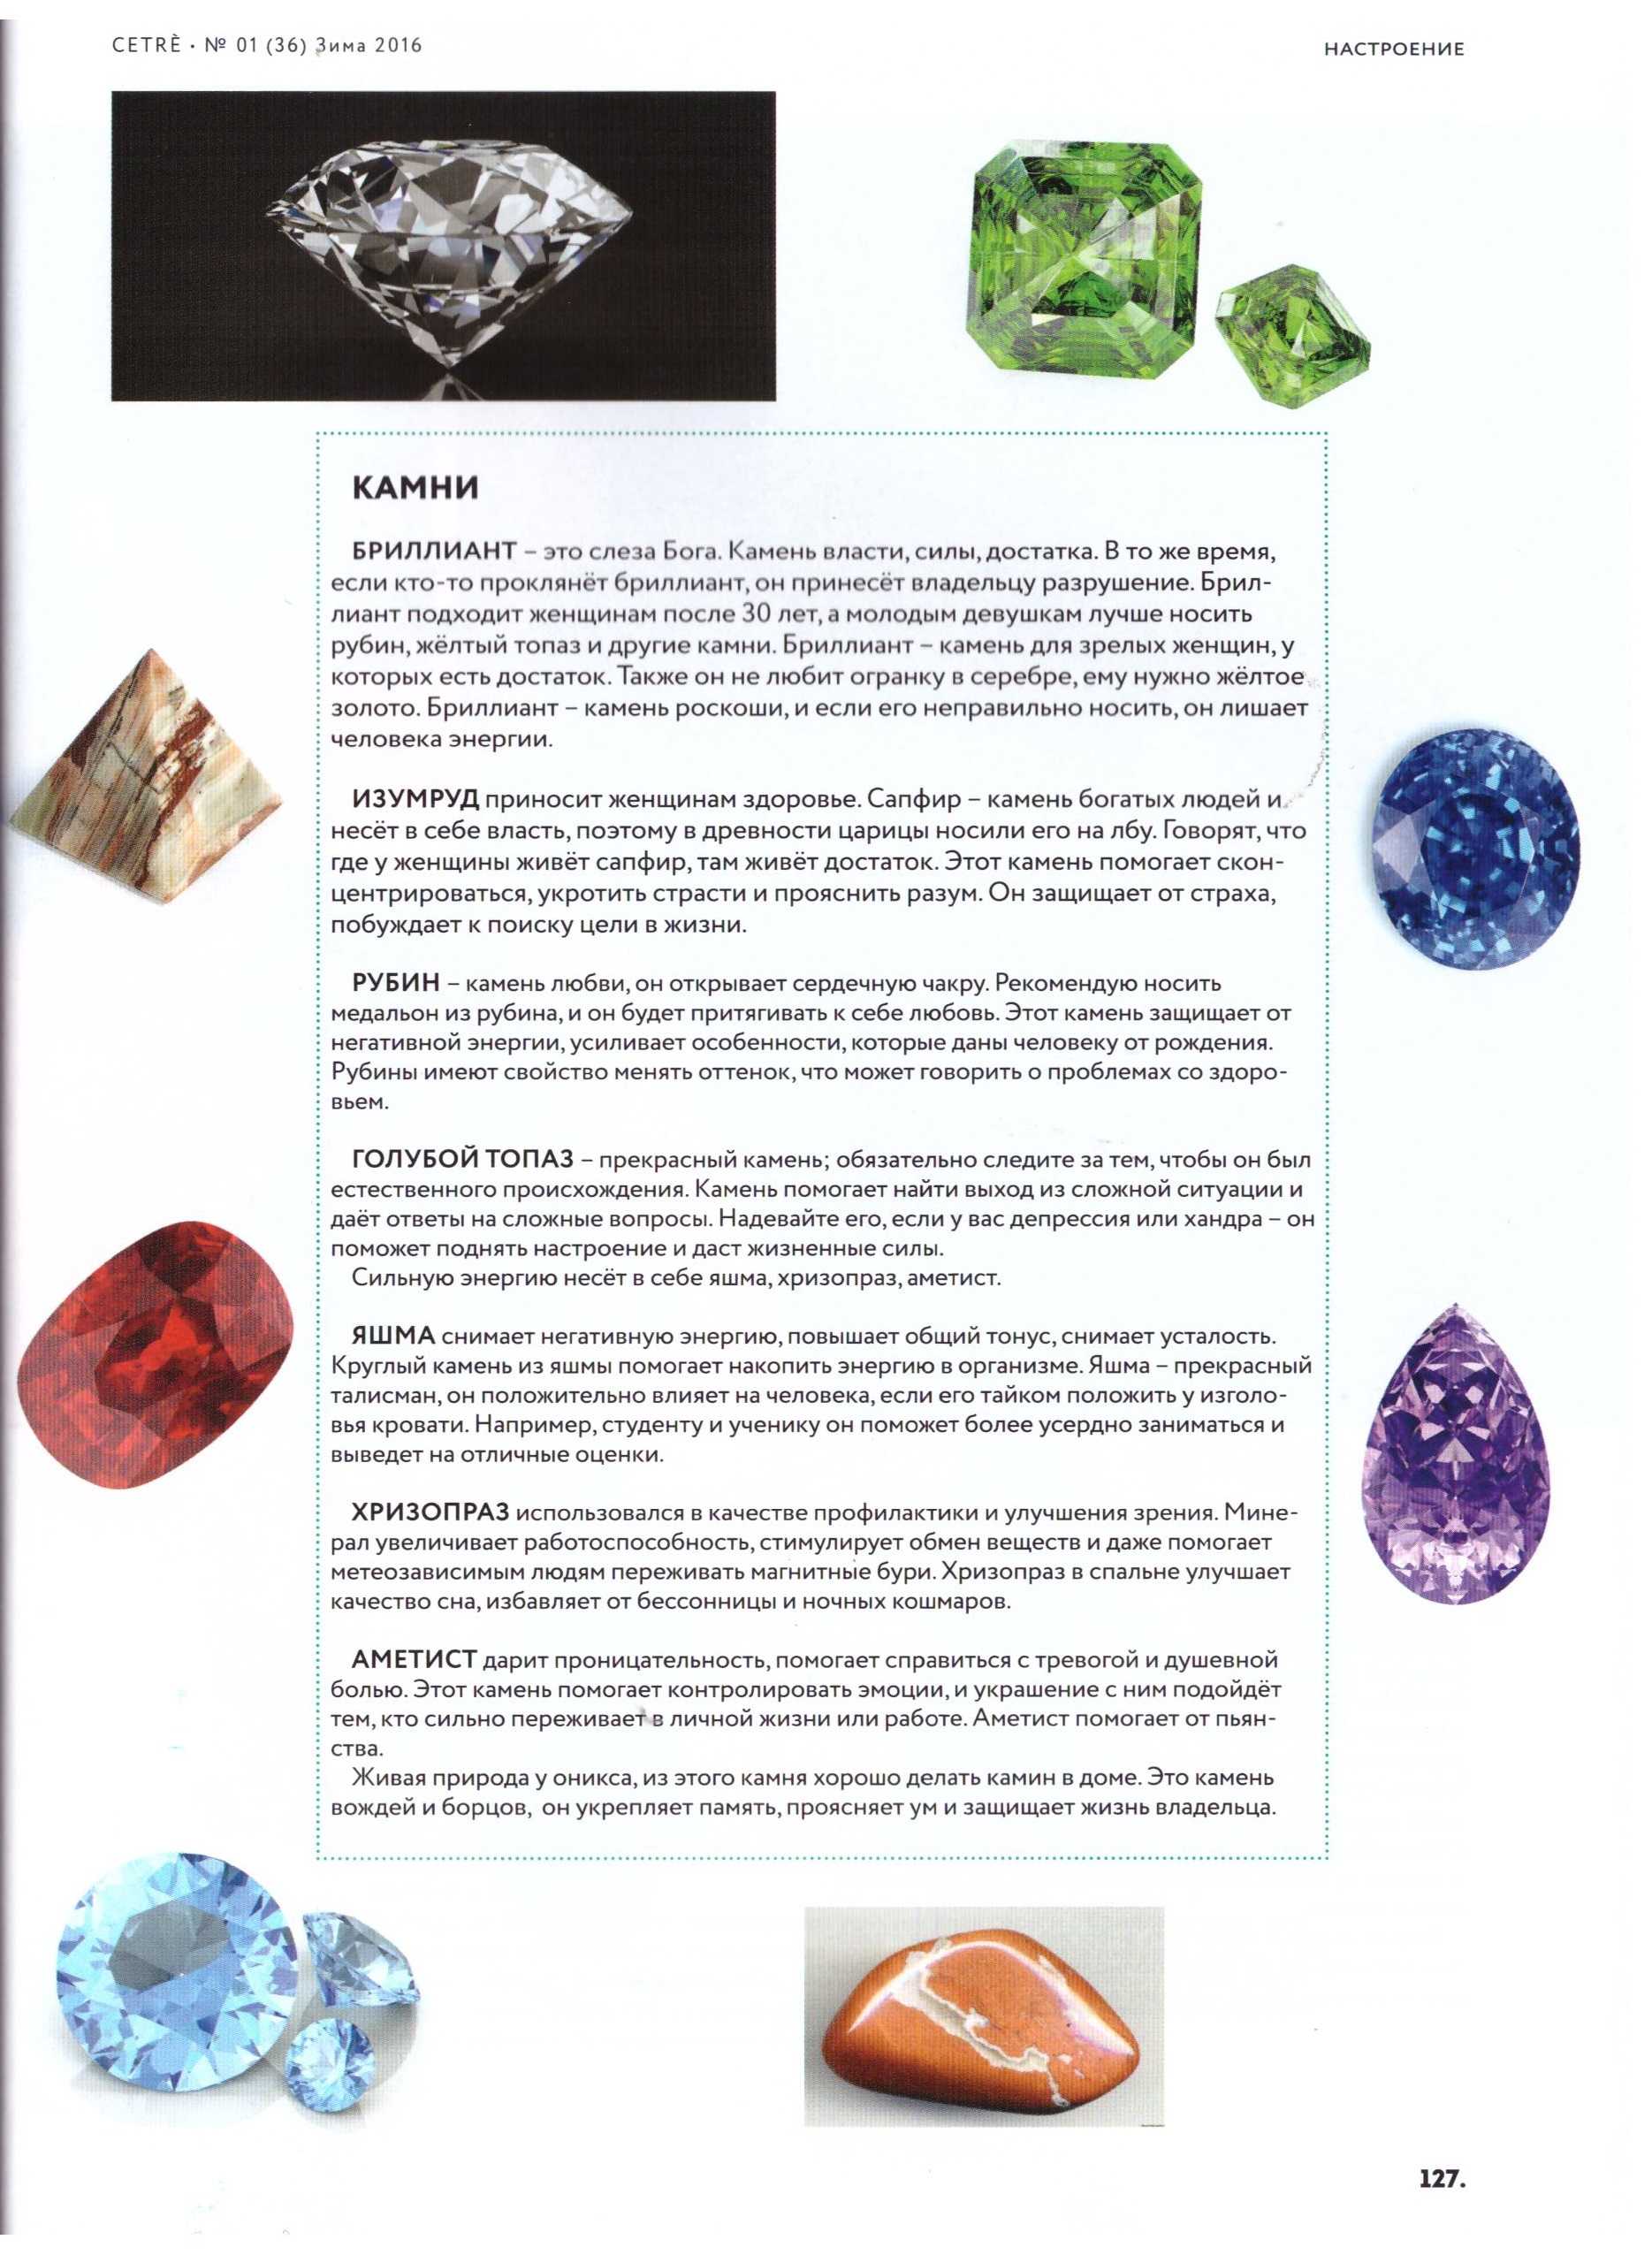 Камень опал: магические свойства и кому подходит по знаку зодиака (фото)